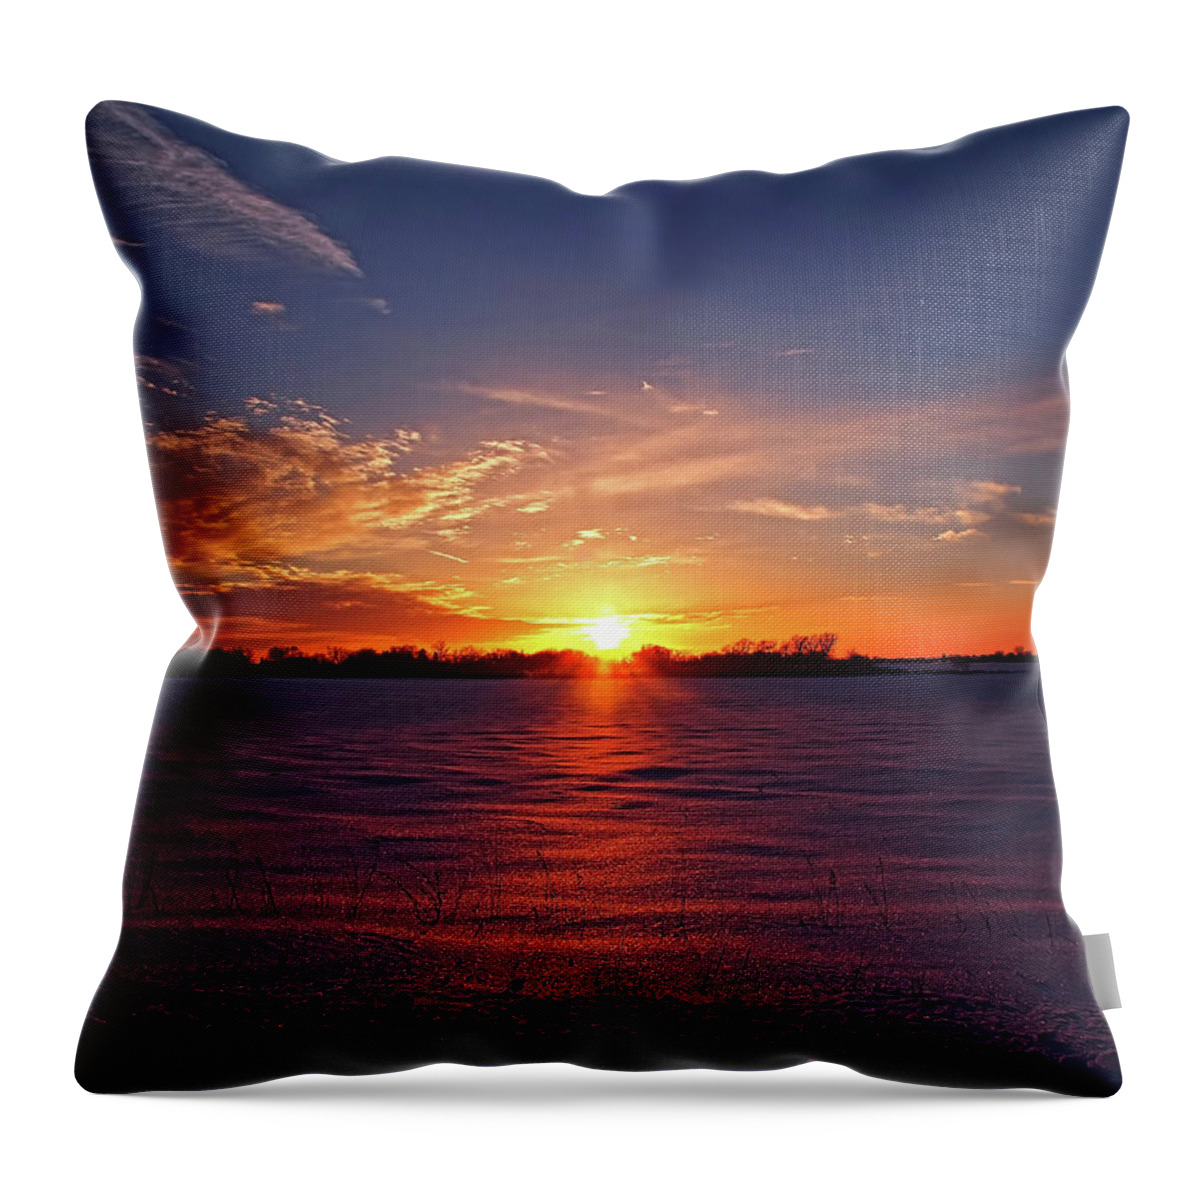 Winter Throw Pillow featuring the photograph Winter Sunset by Scott Olsen